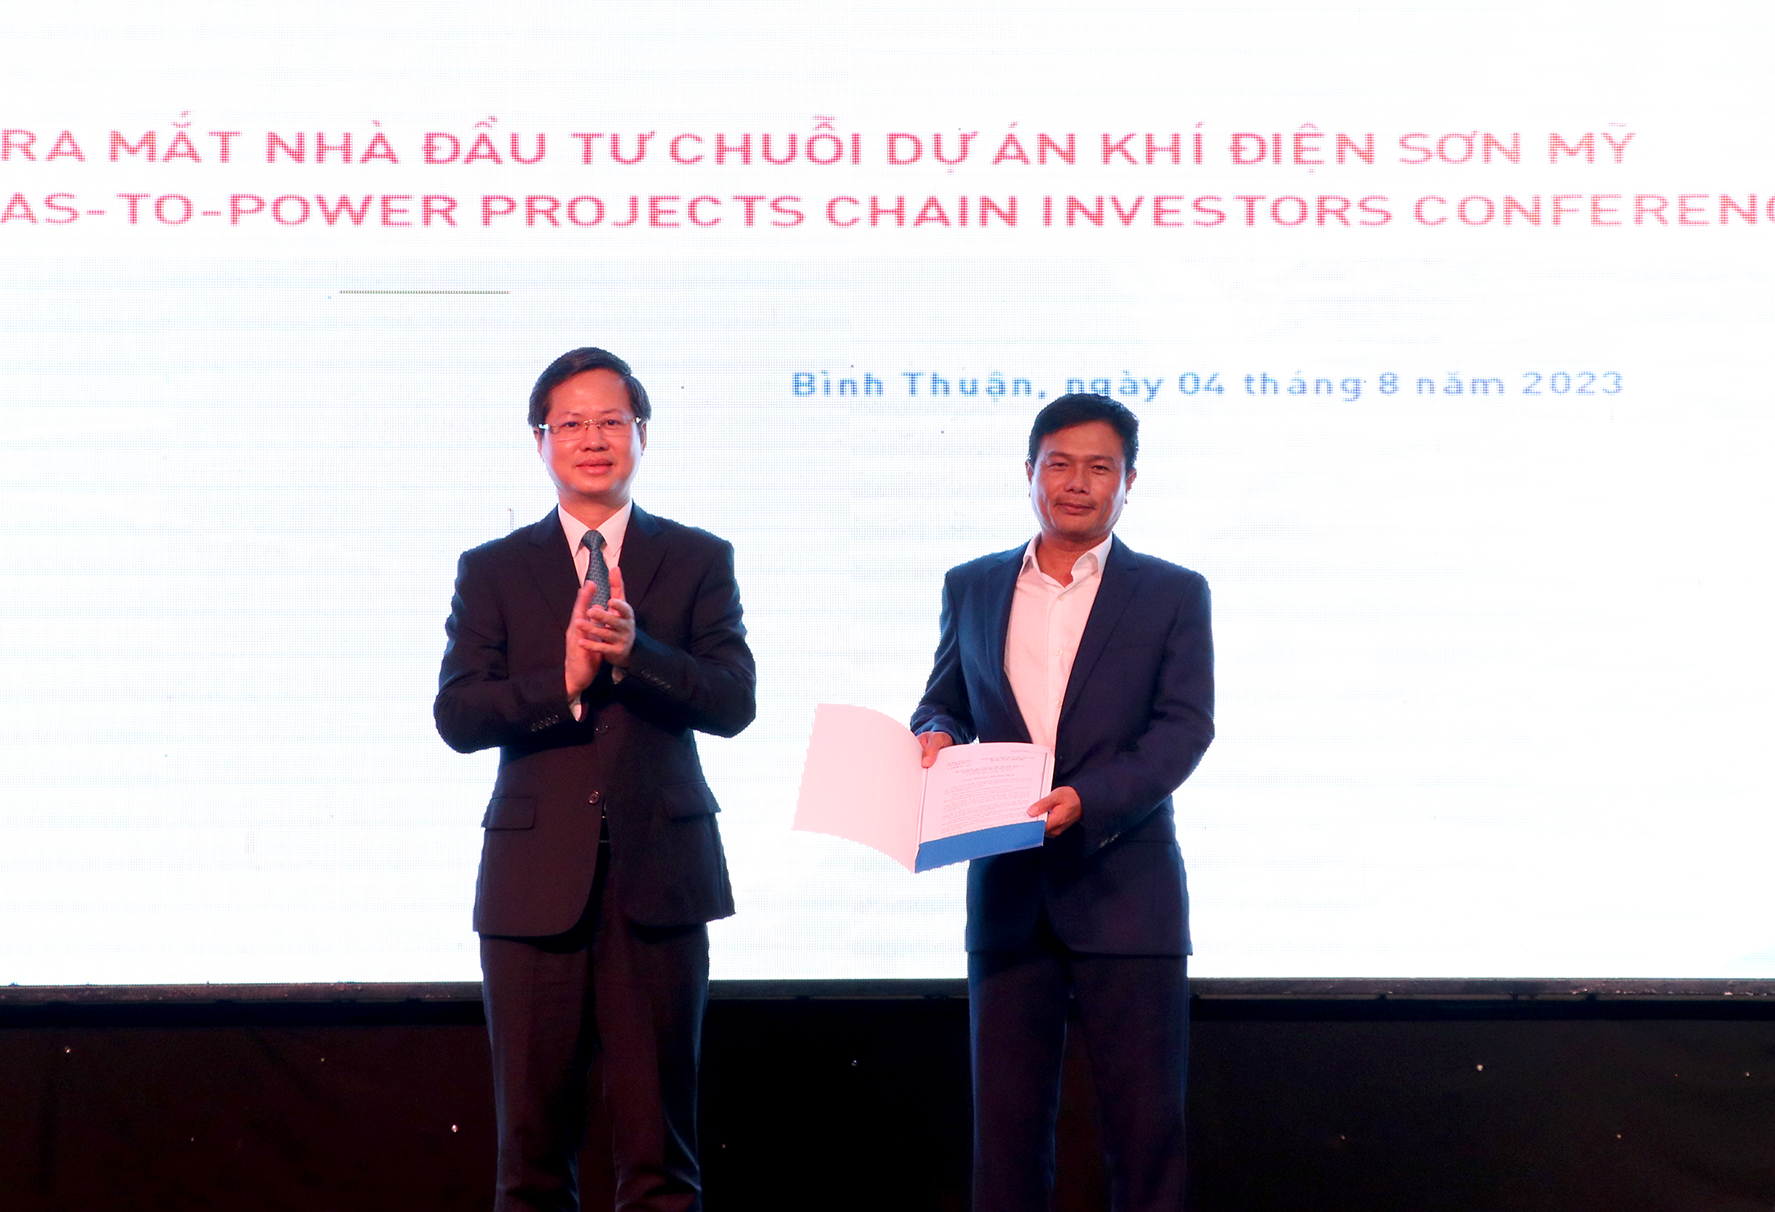 Nhiều nhà đầu tư lớn từ các nước Mỹ, Pháp, Nhật Bản đến Bình Thuận đầu tư chuỗi dự án khí - điện Sơn Mỹ - Ảnh 3.